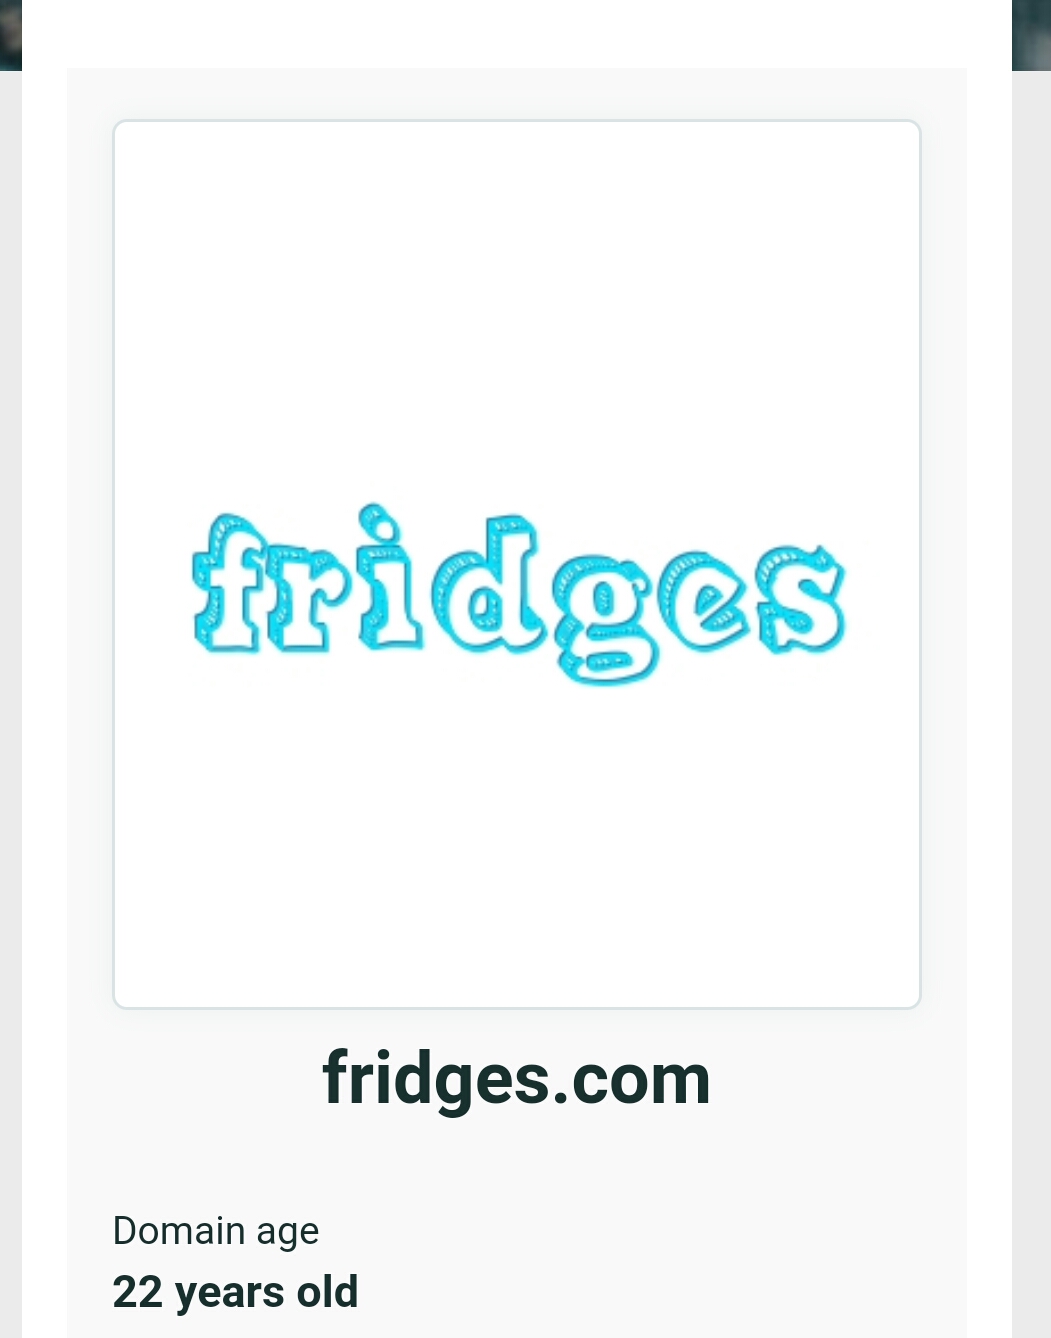 Fridges.com sells for $20 K